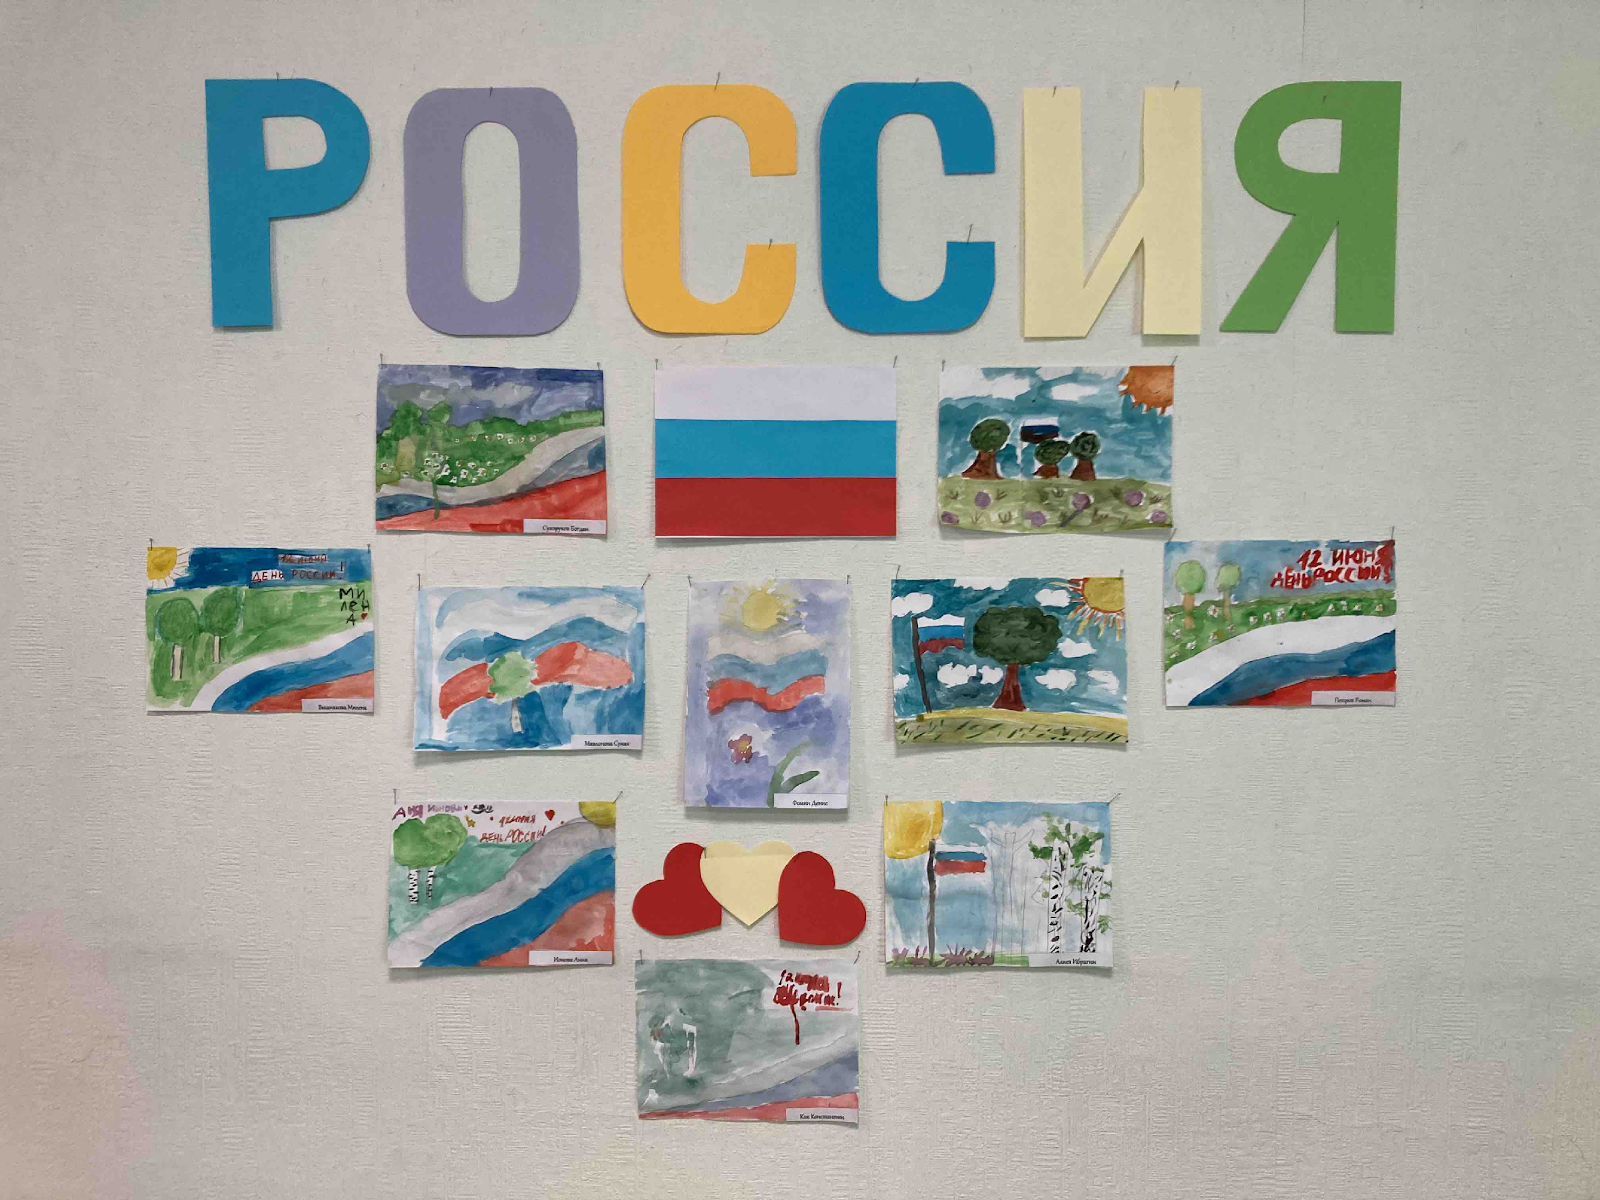 Выставка «Россия»